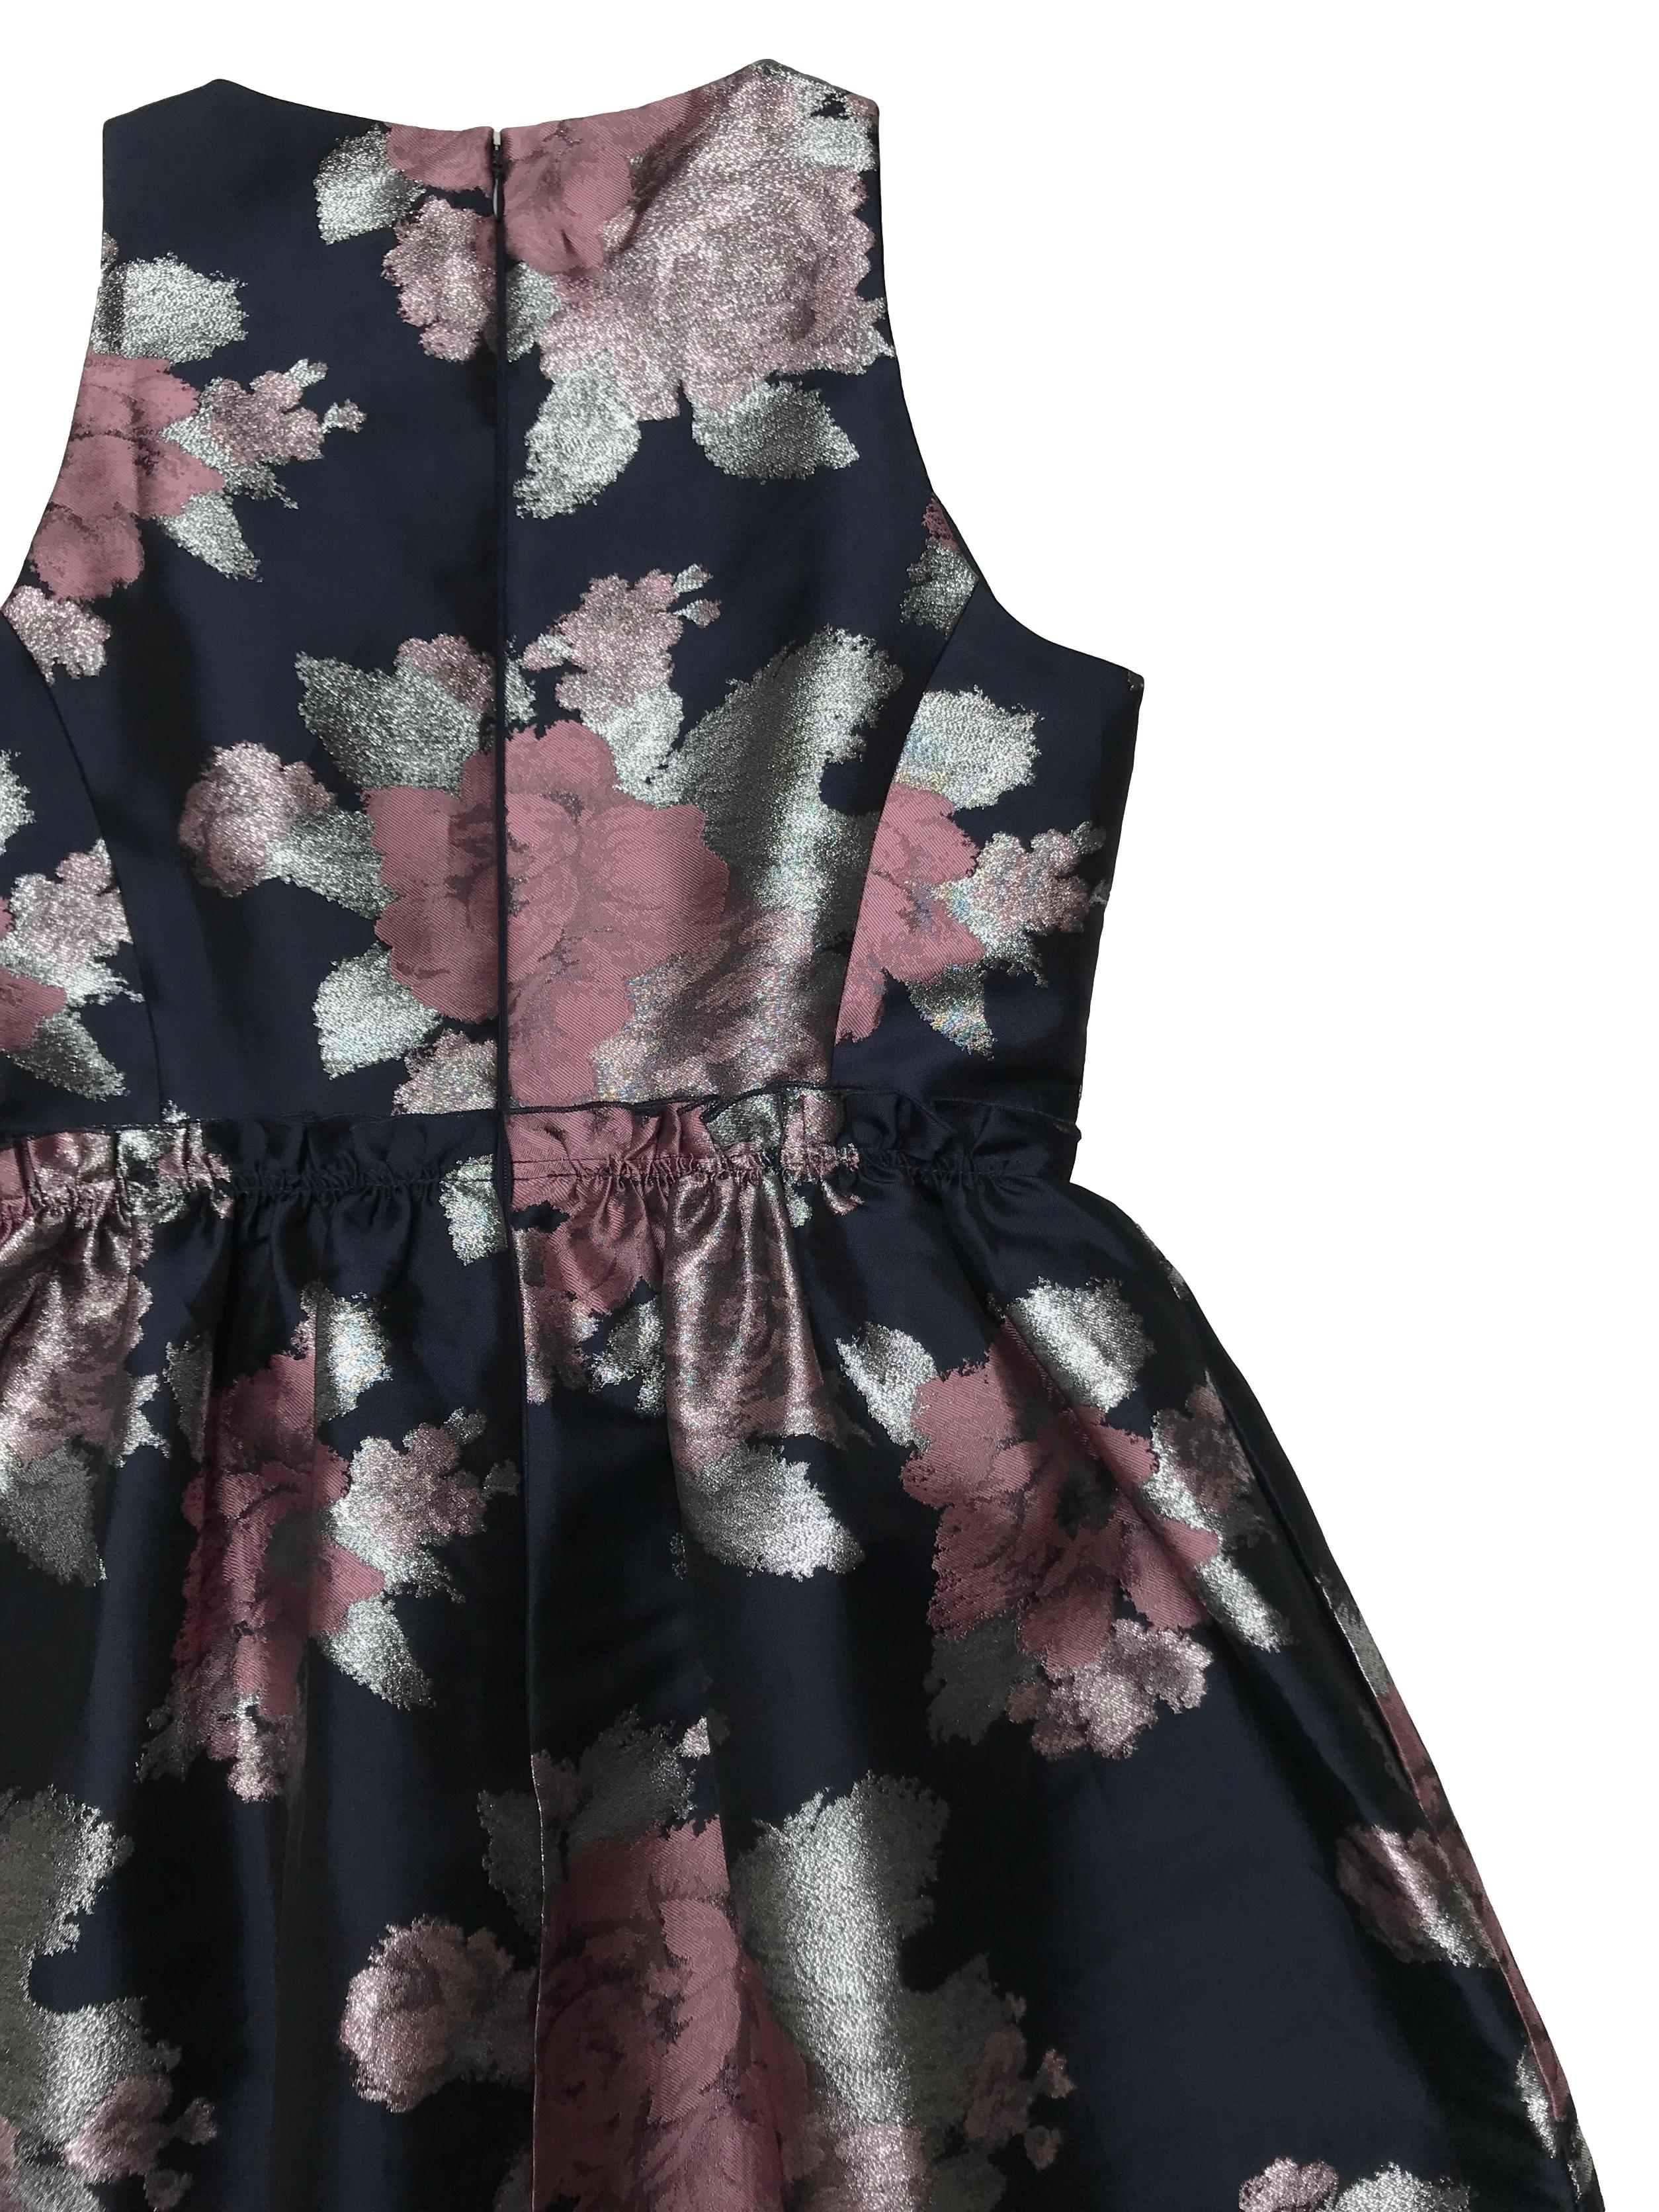 Vestido coctel Tahari, azul con brocado de flores rosa y plateado, falda estructurada con bolsillos laterales, tiene forro y cierre posterior. Busto 90cm Cintura 70cm Largo 90cm. Precio original S/ 600